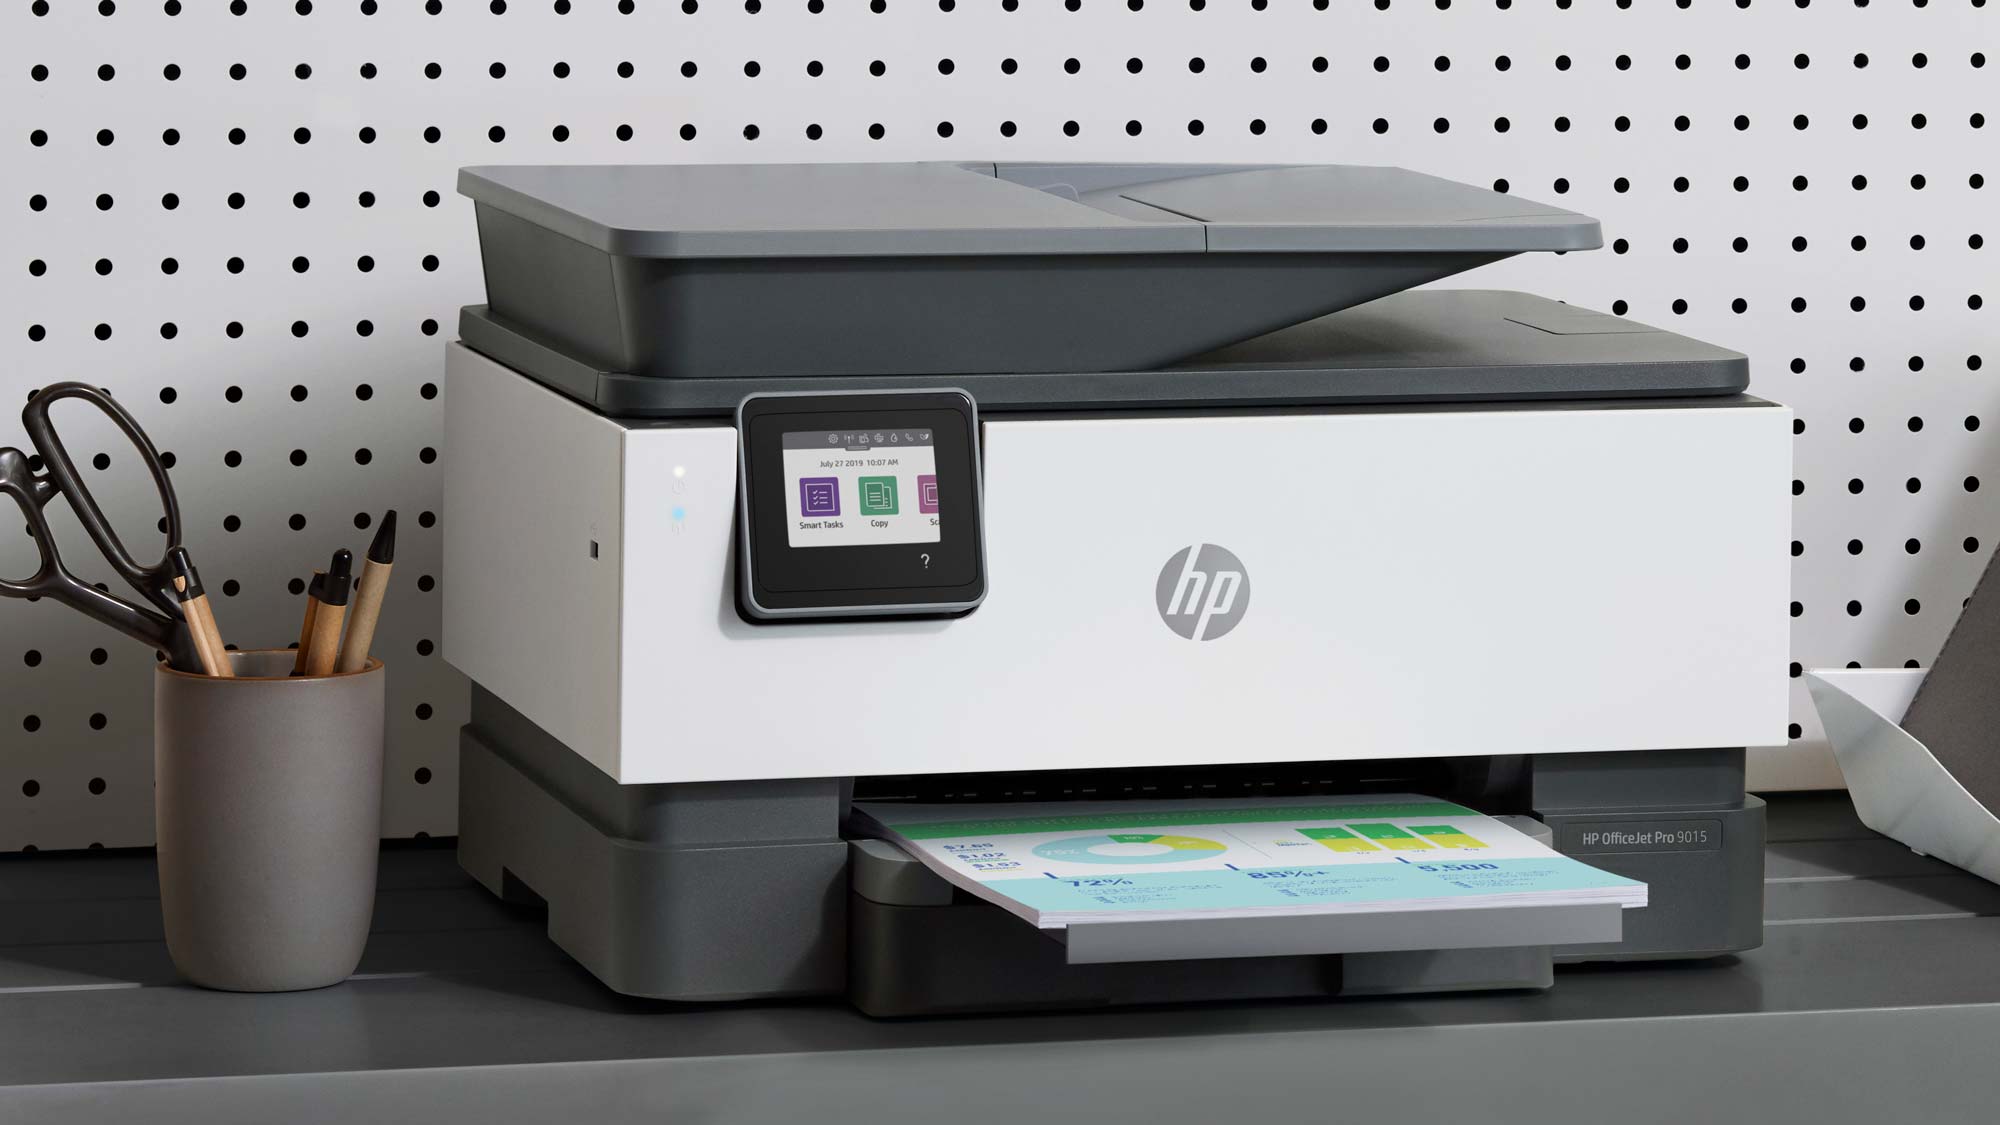 جوهر فوری HP در 5 قدم: چاپ به نوعی از خدمات تبدیل می شود